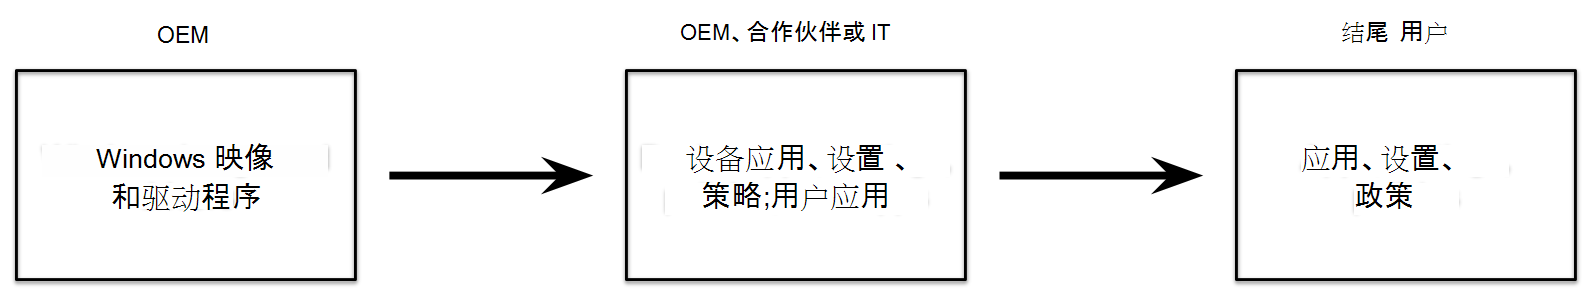 与合作伙伴的 OEM 流程图。